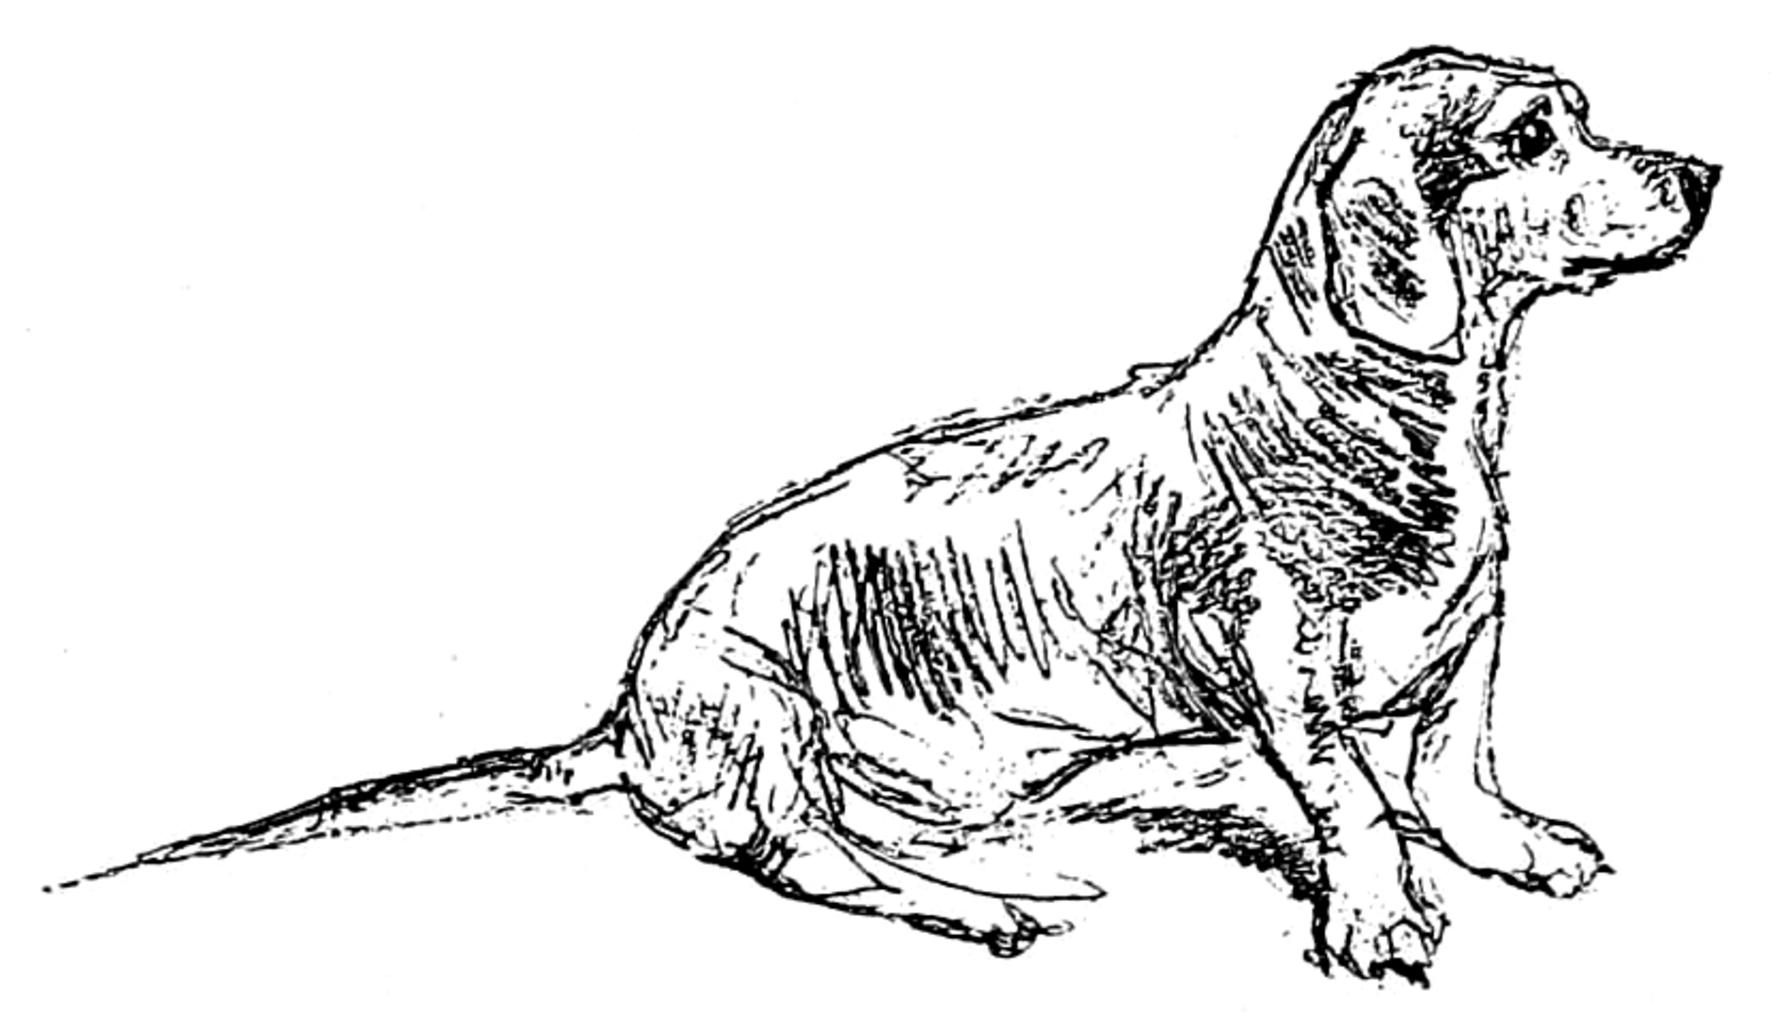 Illustration of a dog